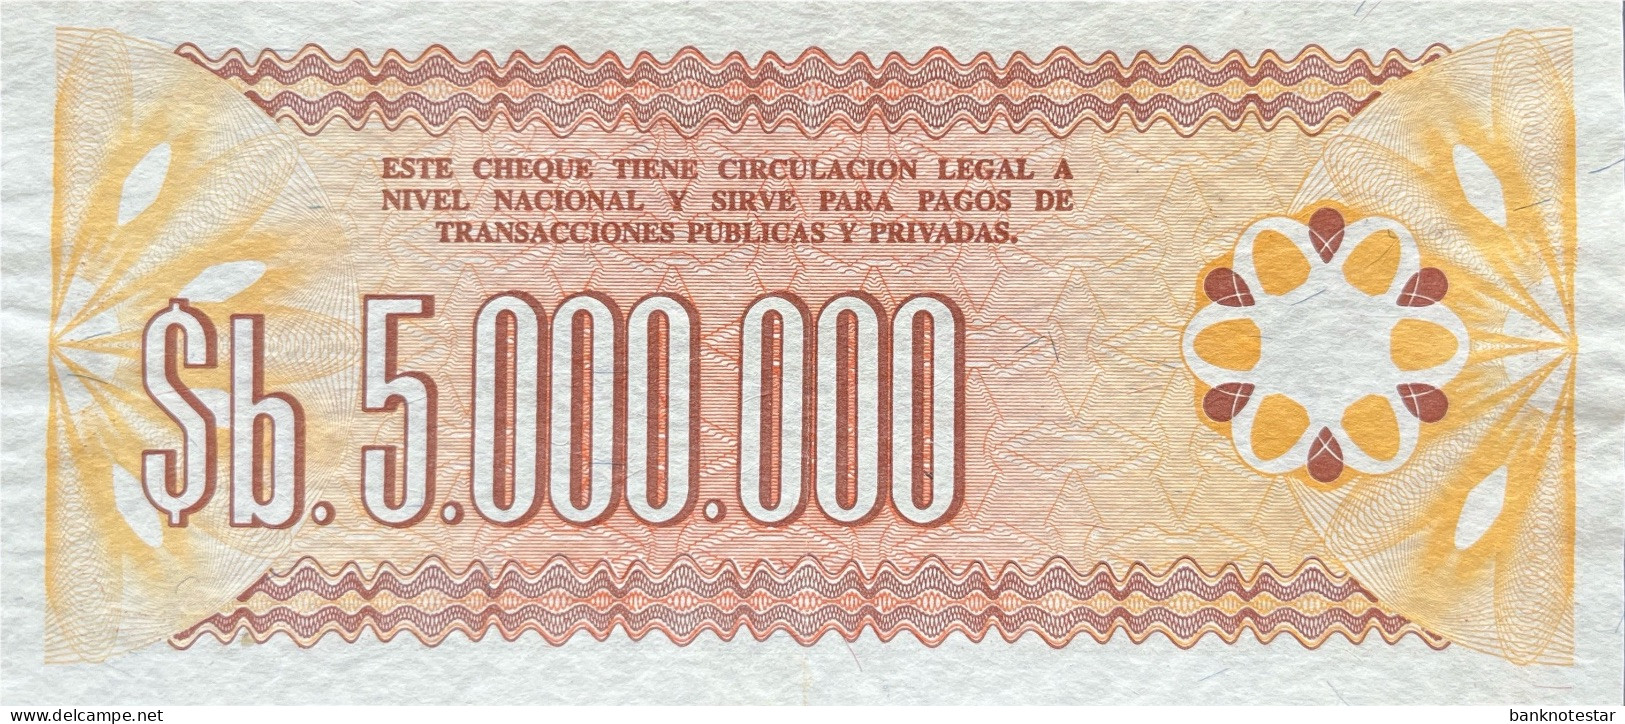 Bolivia 5.000.000 Pesos Bolivianos, P-193 (D.1985) - UNC - Bolivia